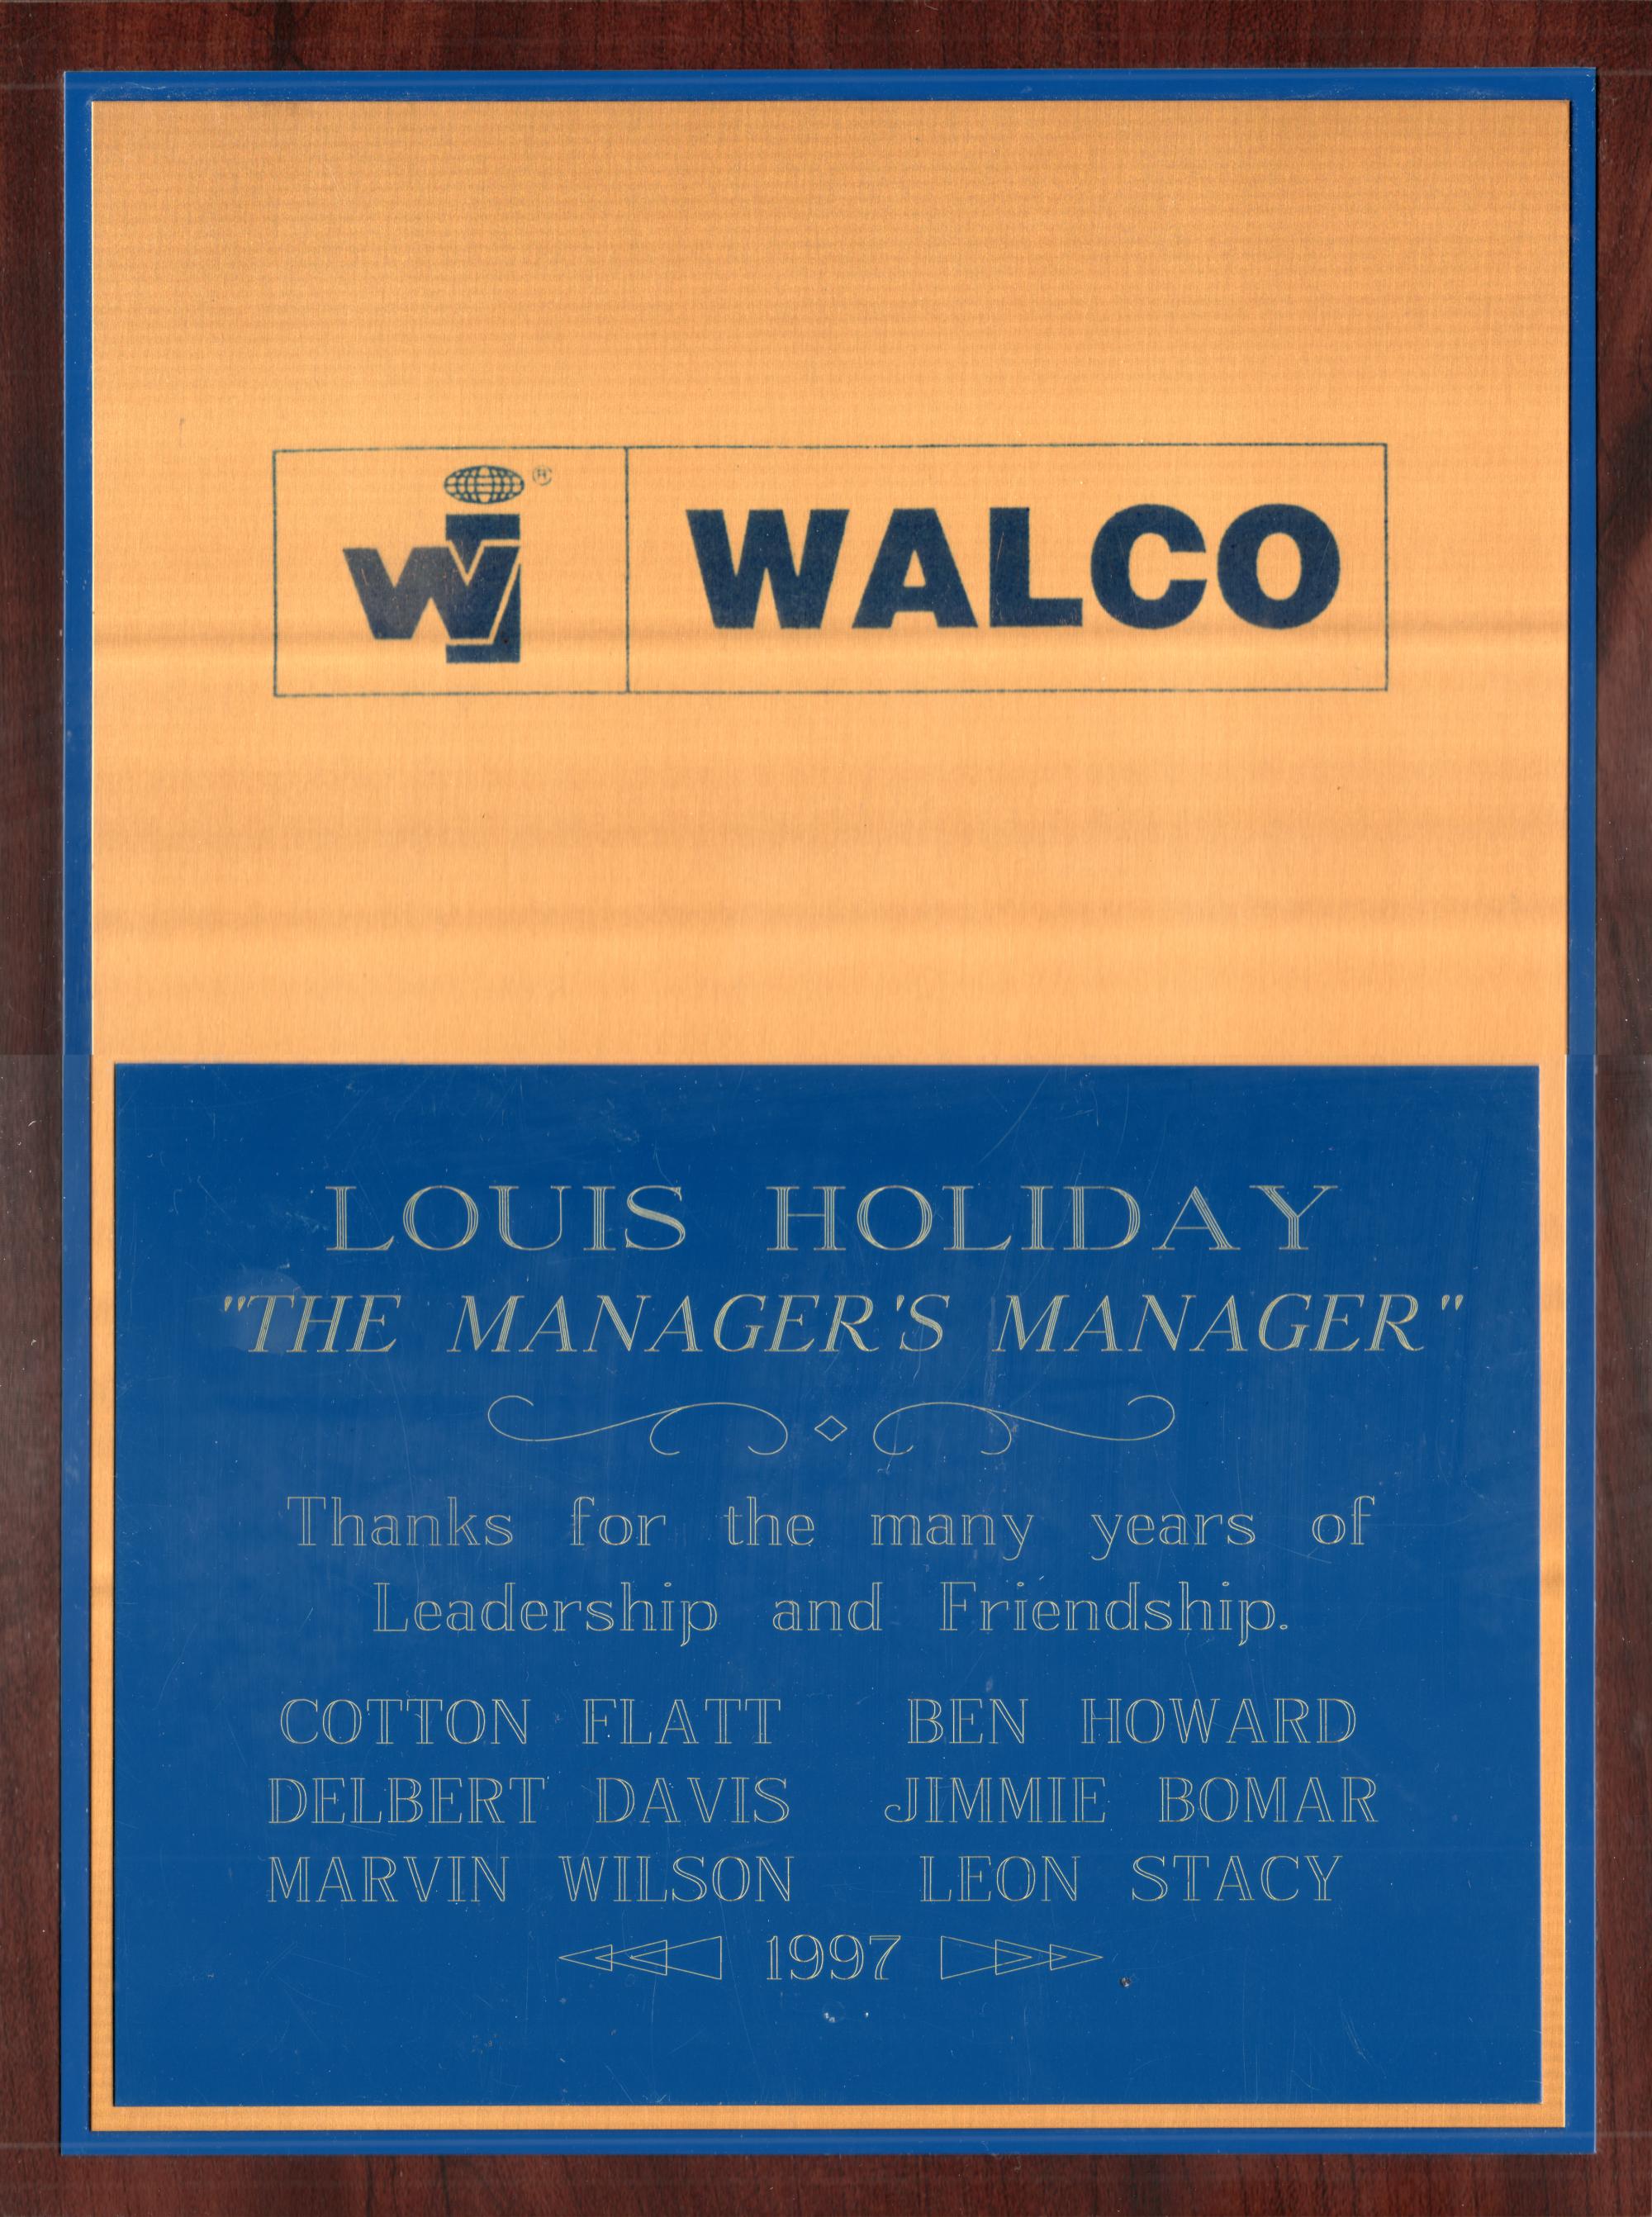 Walco (El Paso) - Louis Holiday Plaque